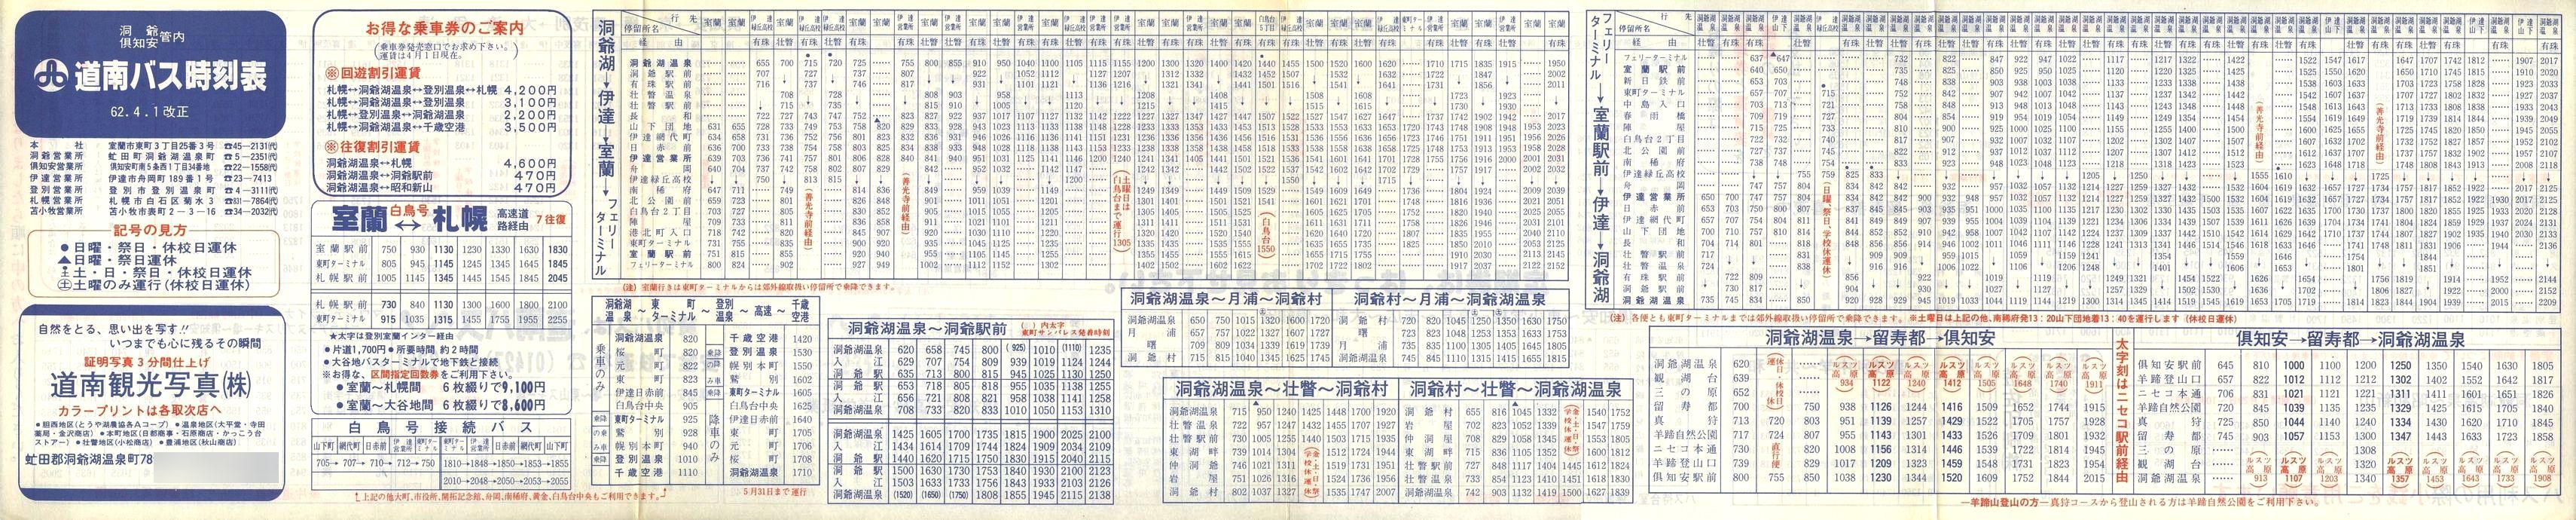 1987-04-01改正_道南バス_洞爺・伊達・倶知安管内時刻表表面